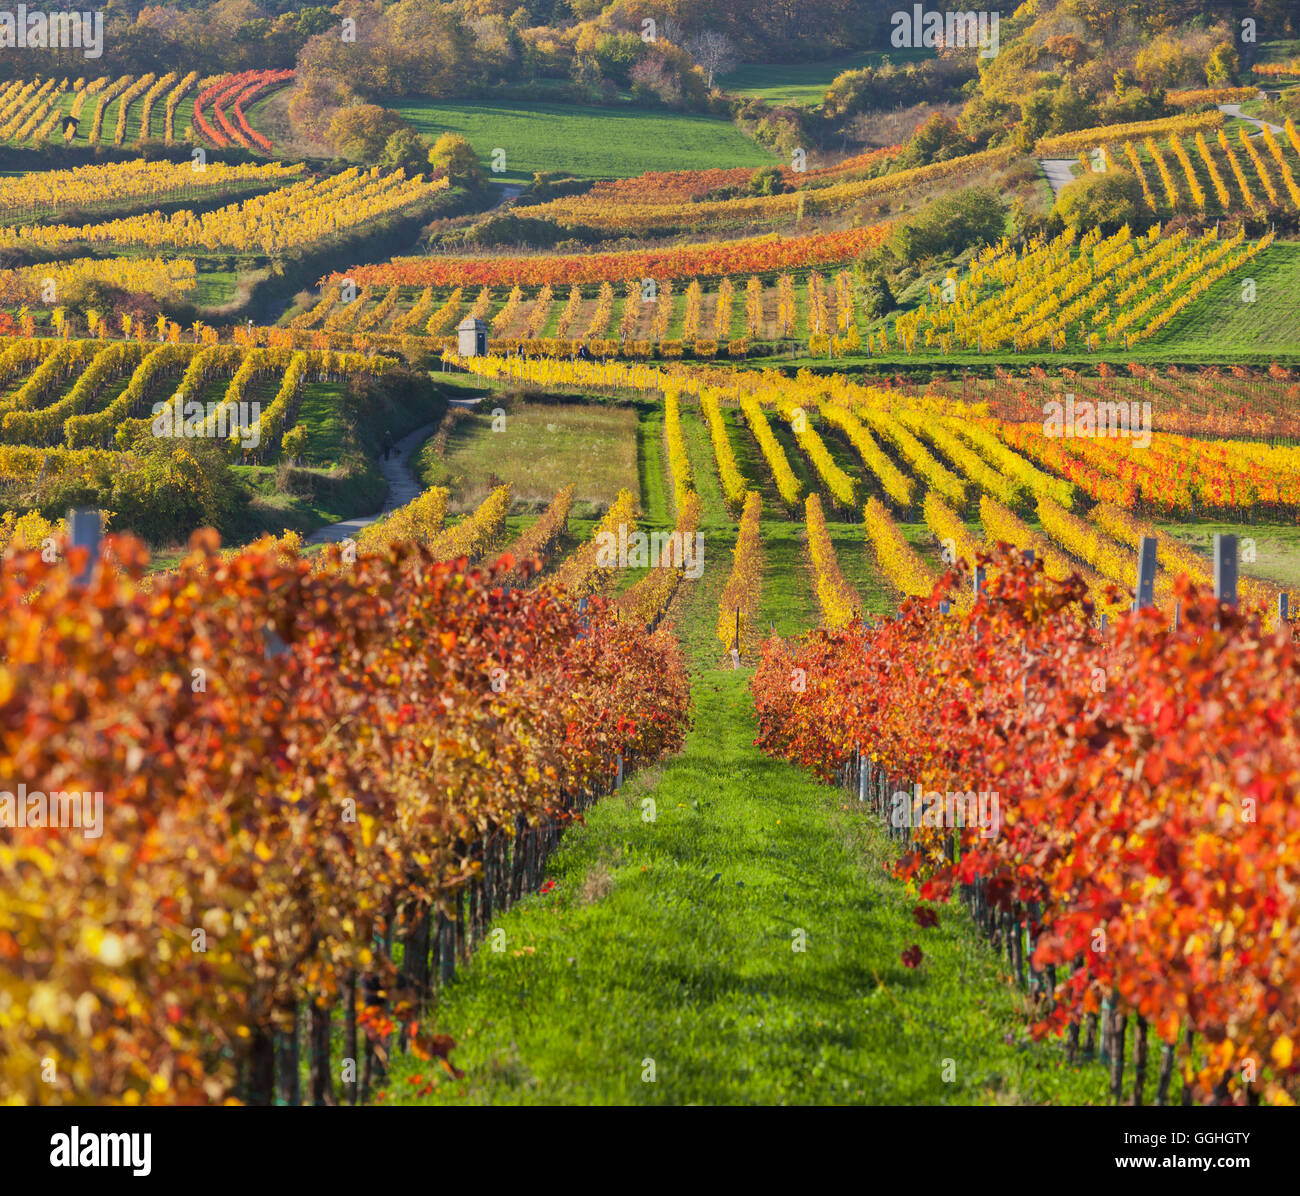 Autumnal vines, vineyards, Baden near Vienna, Southern Wiener Becken, Wienerwald, Lower Austria, Austria Stock Photo